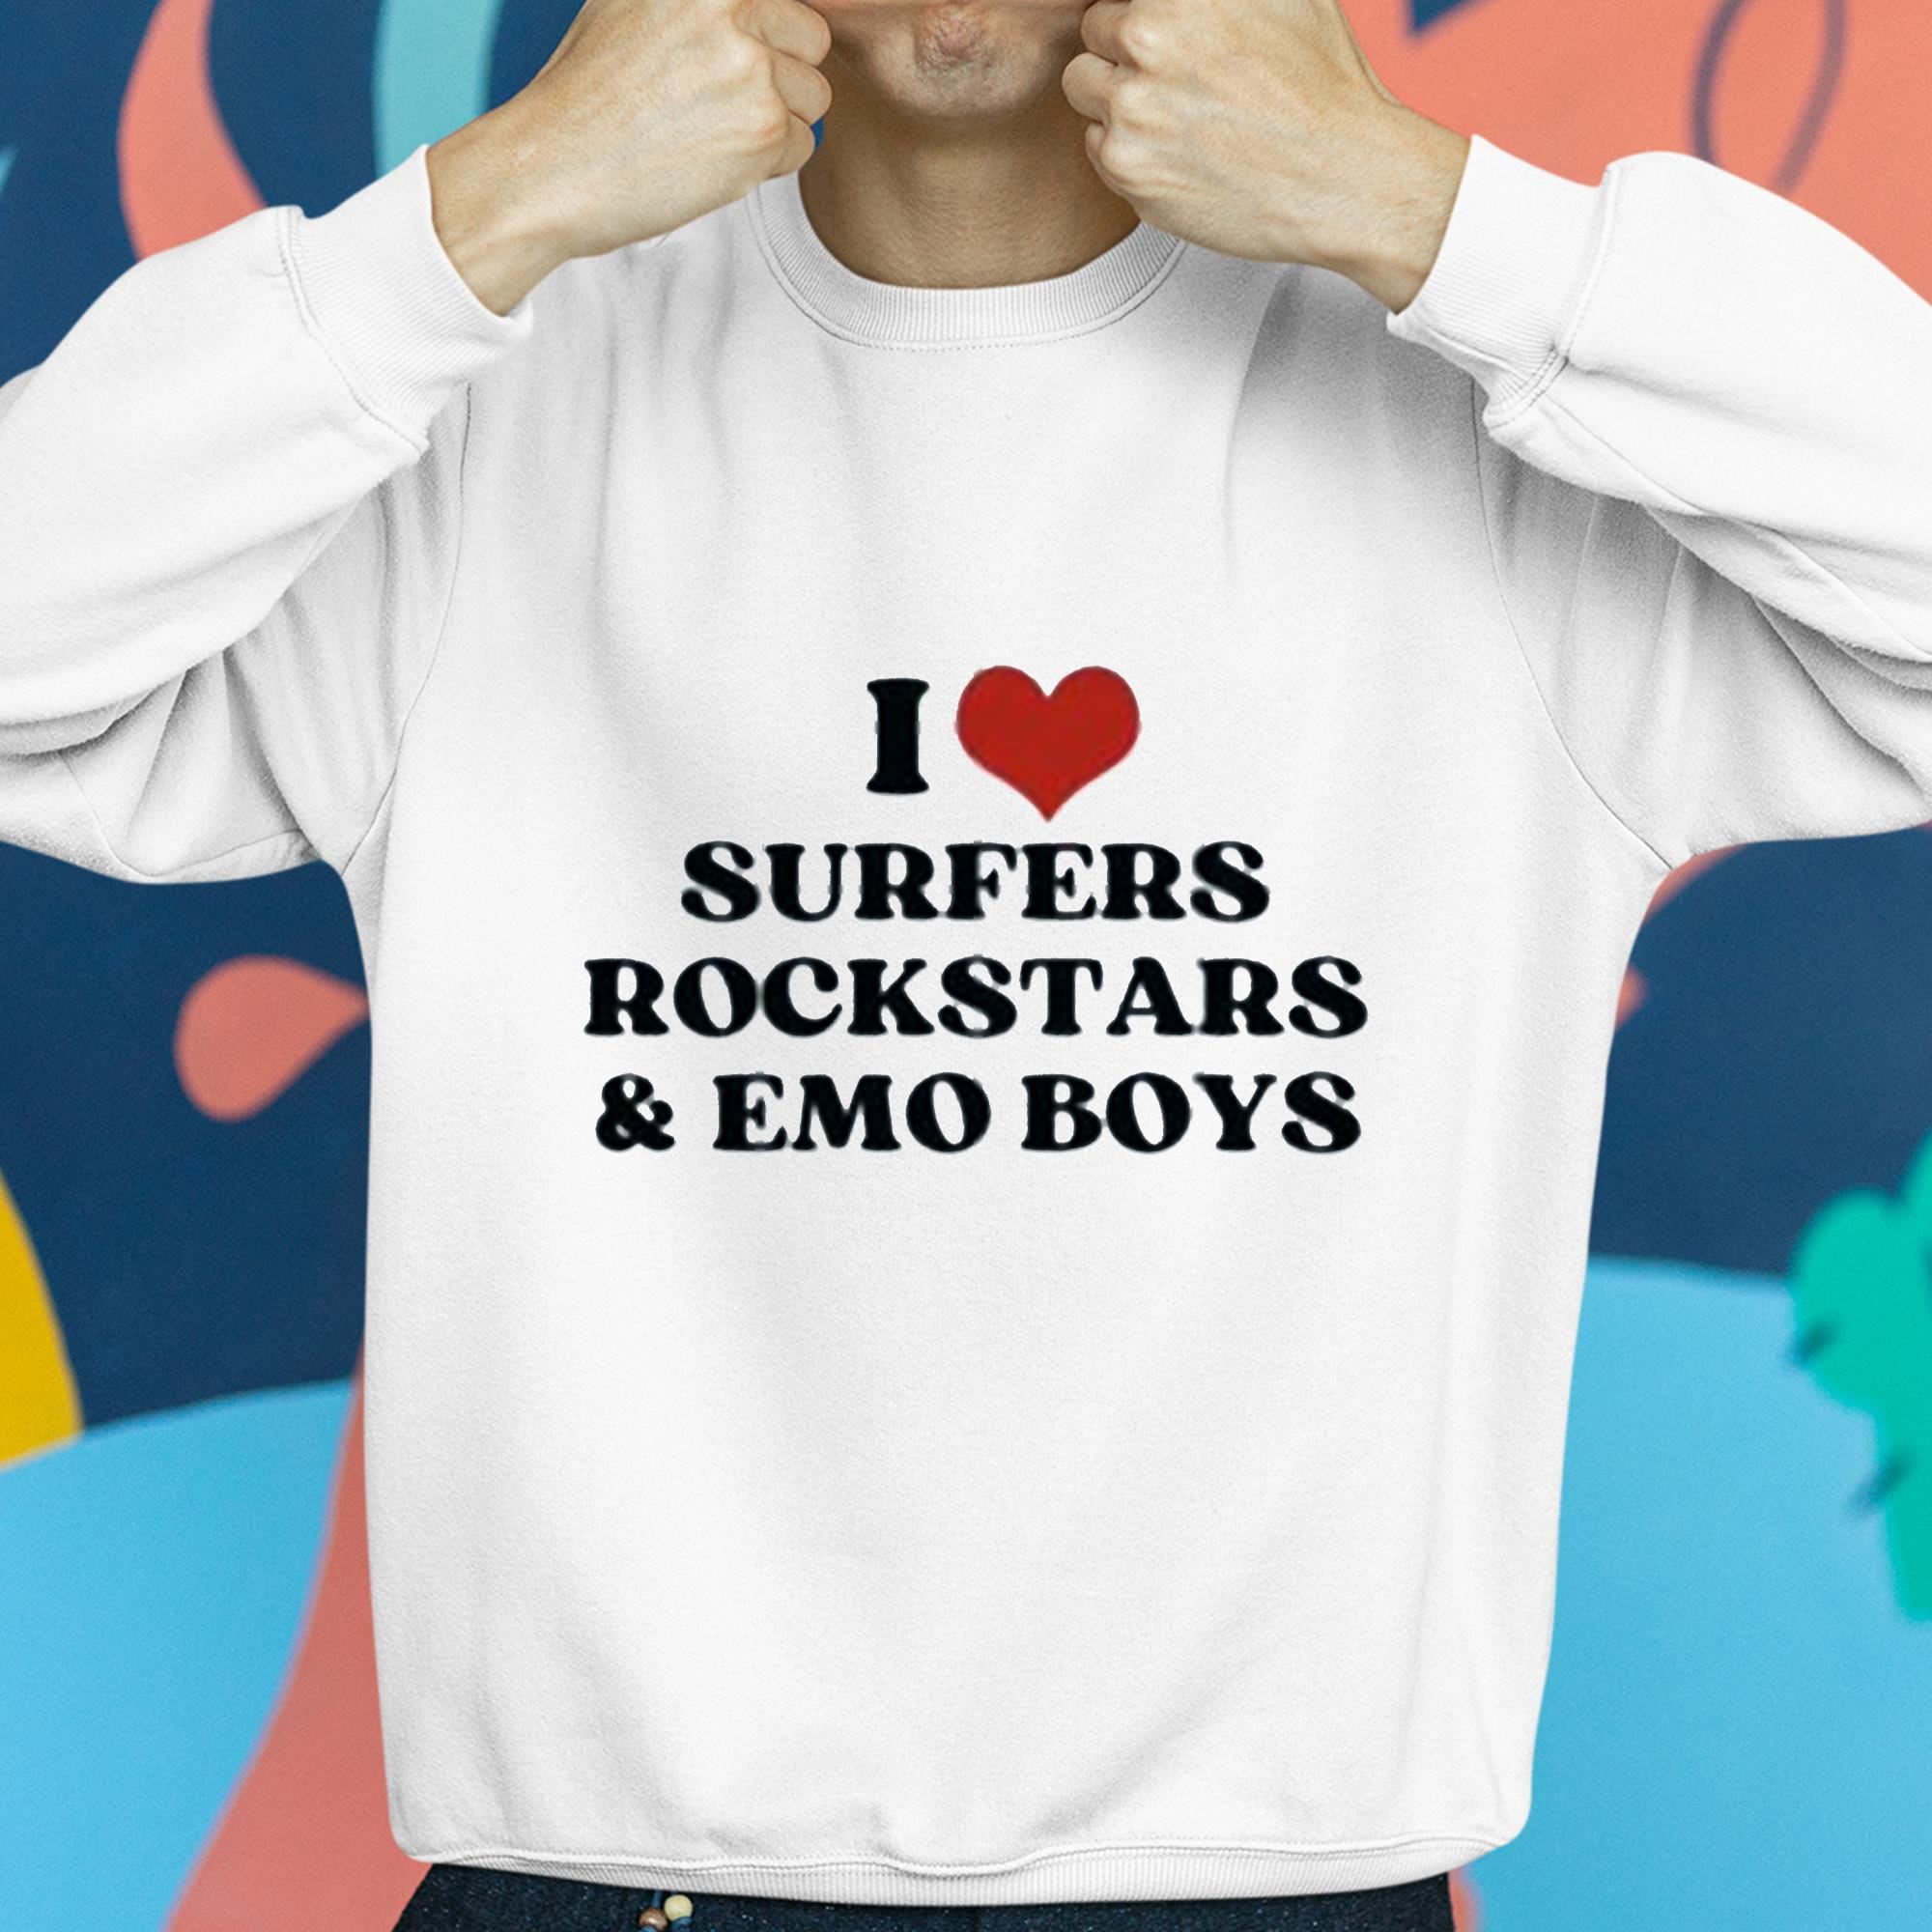 I Love Emo Boys Shirt Emo Shirt I Heart Emo Boys Emo 